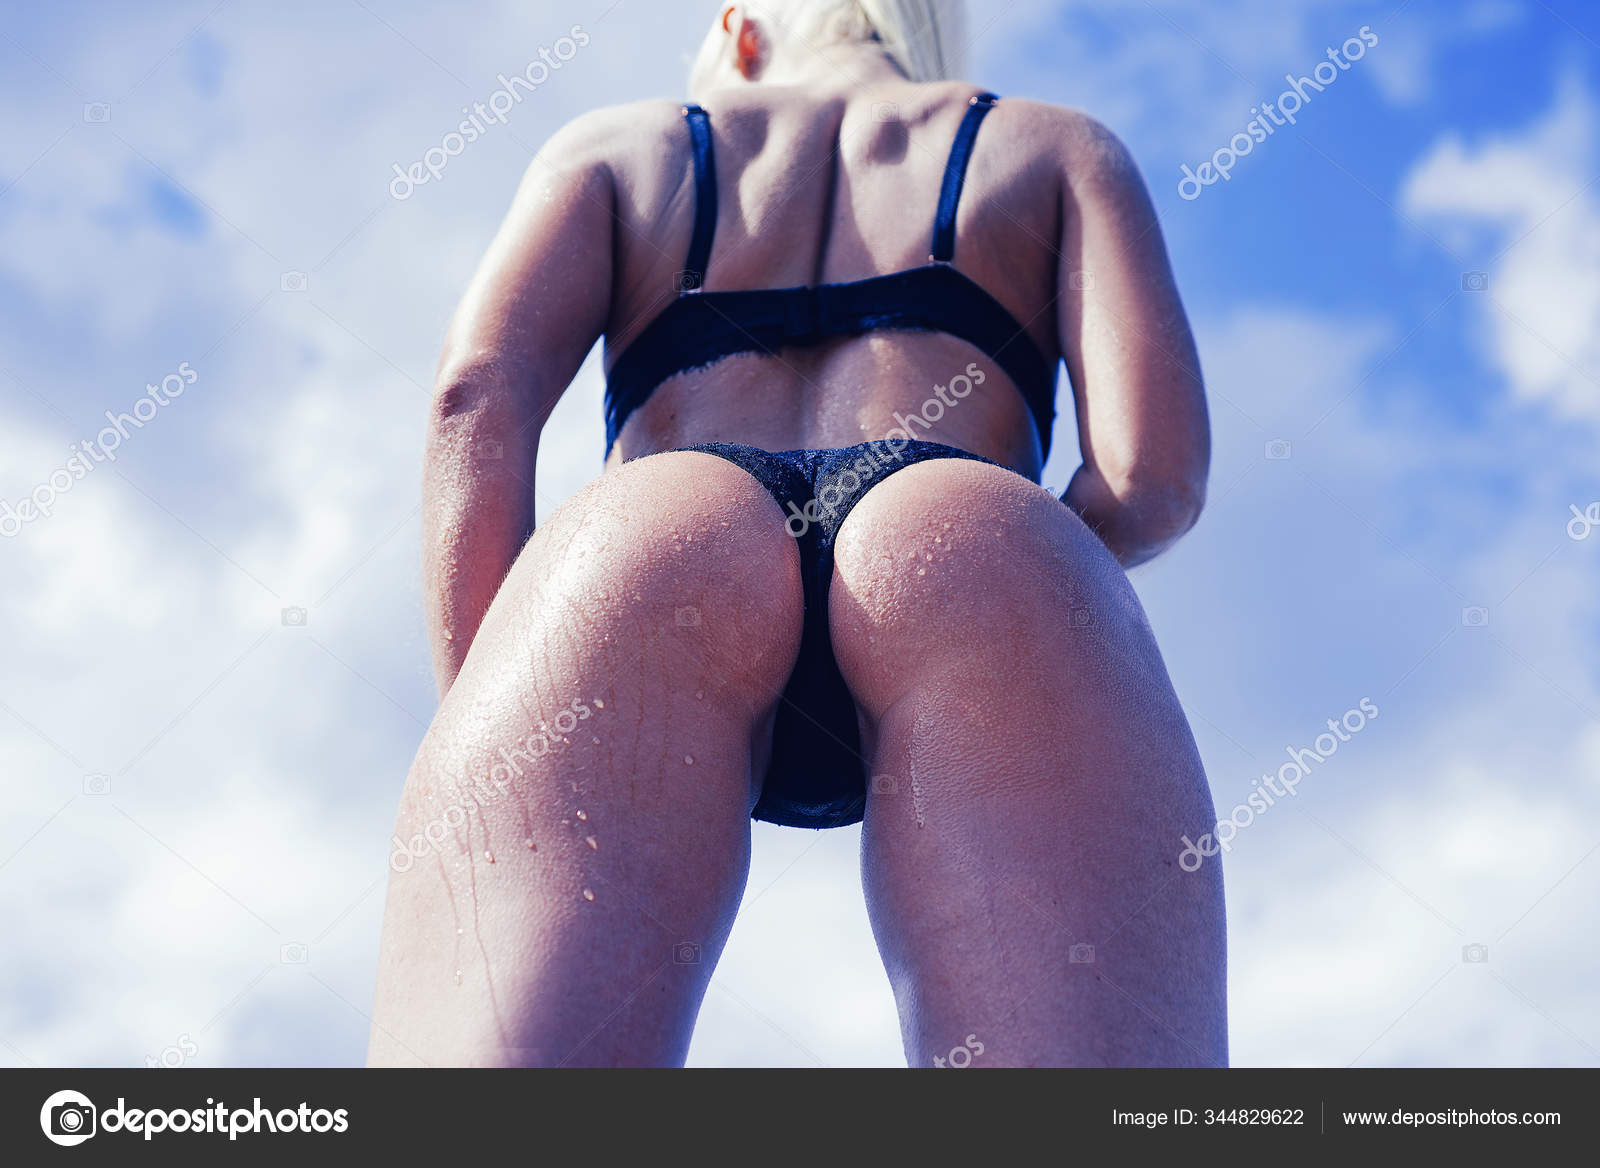 wife posing in bikini Porn Pics Hd